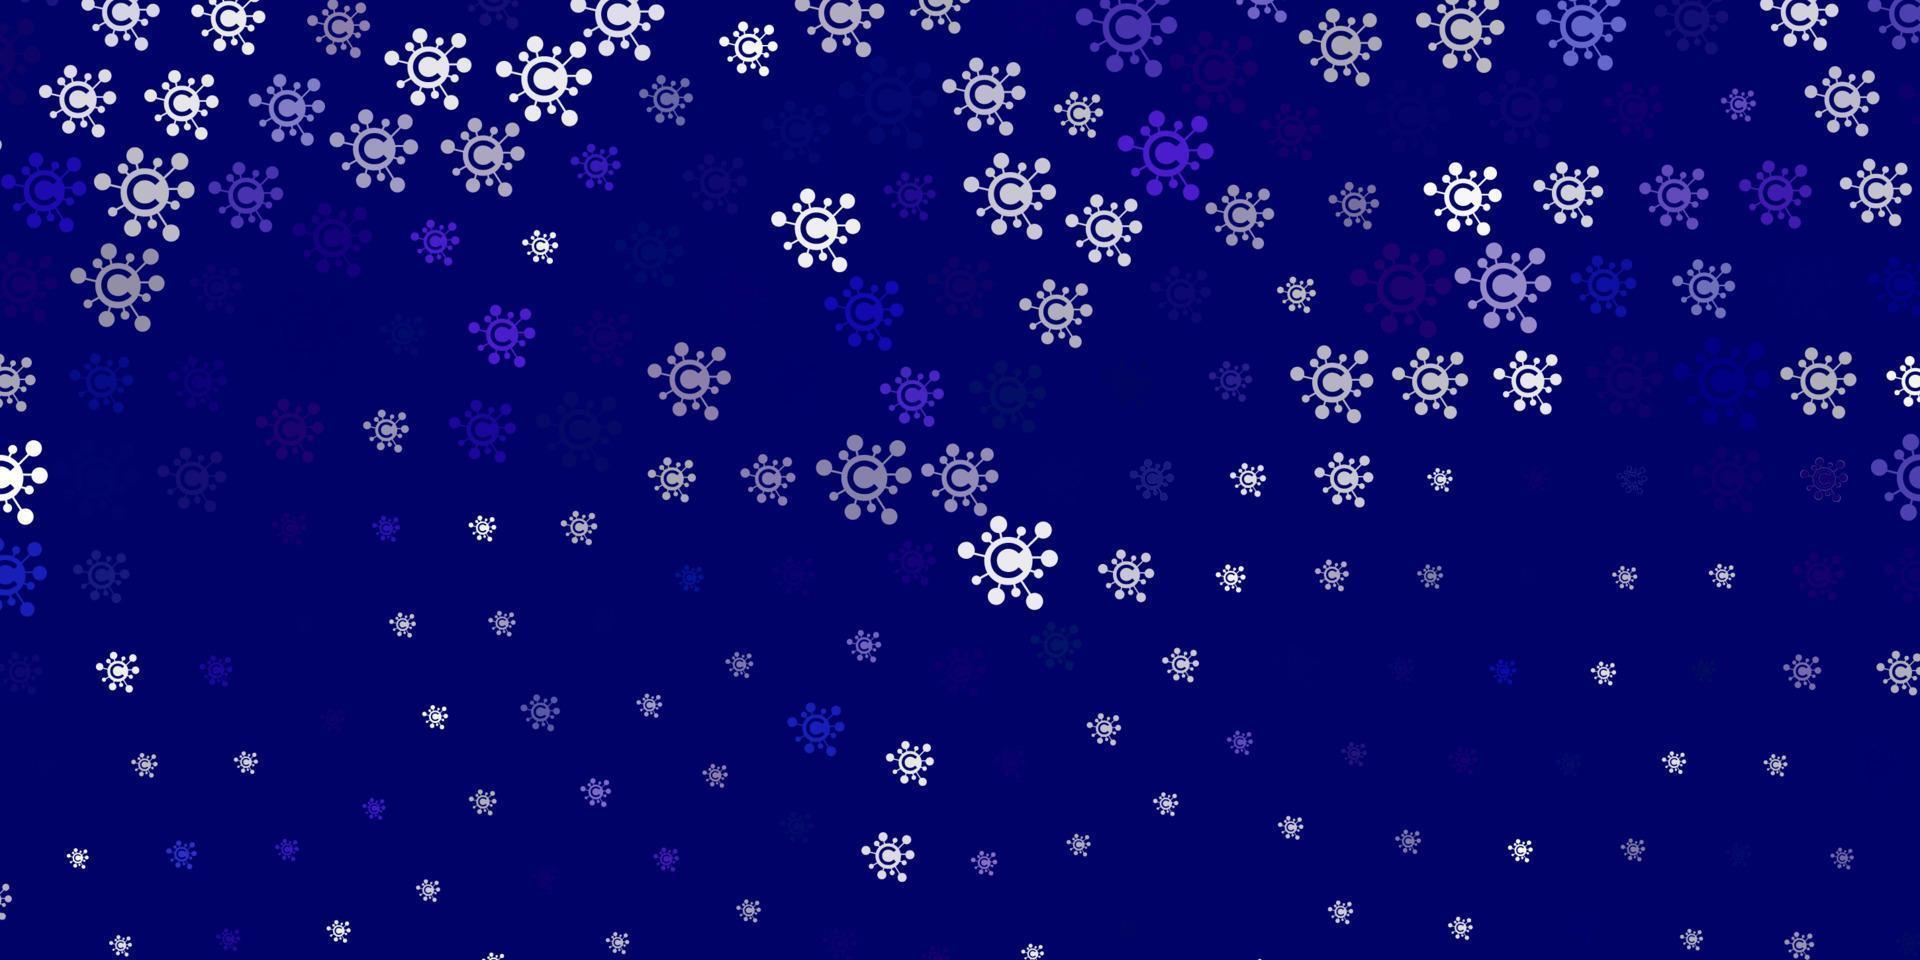 Light Purple vector pattern with coronavirus elements.